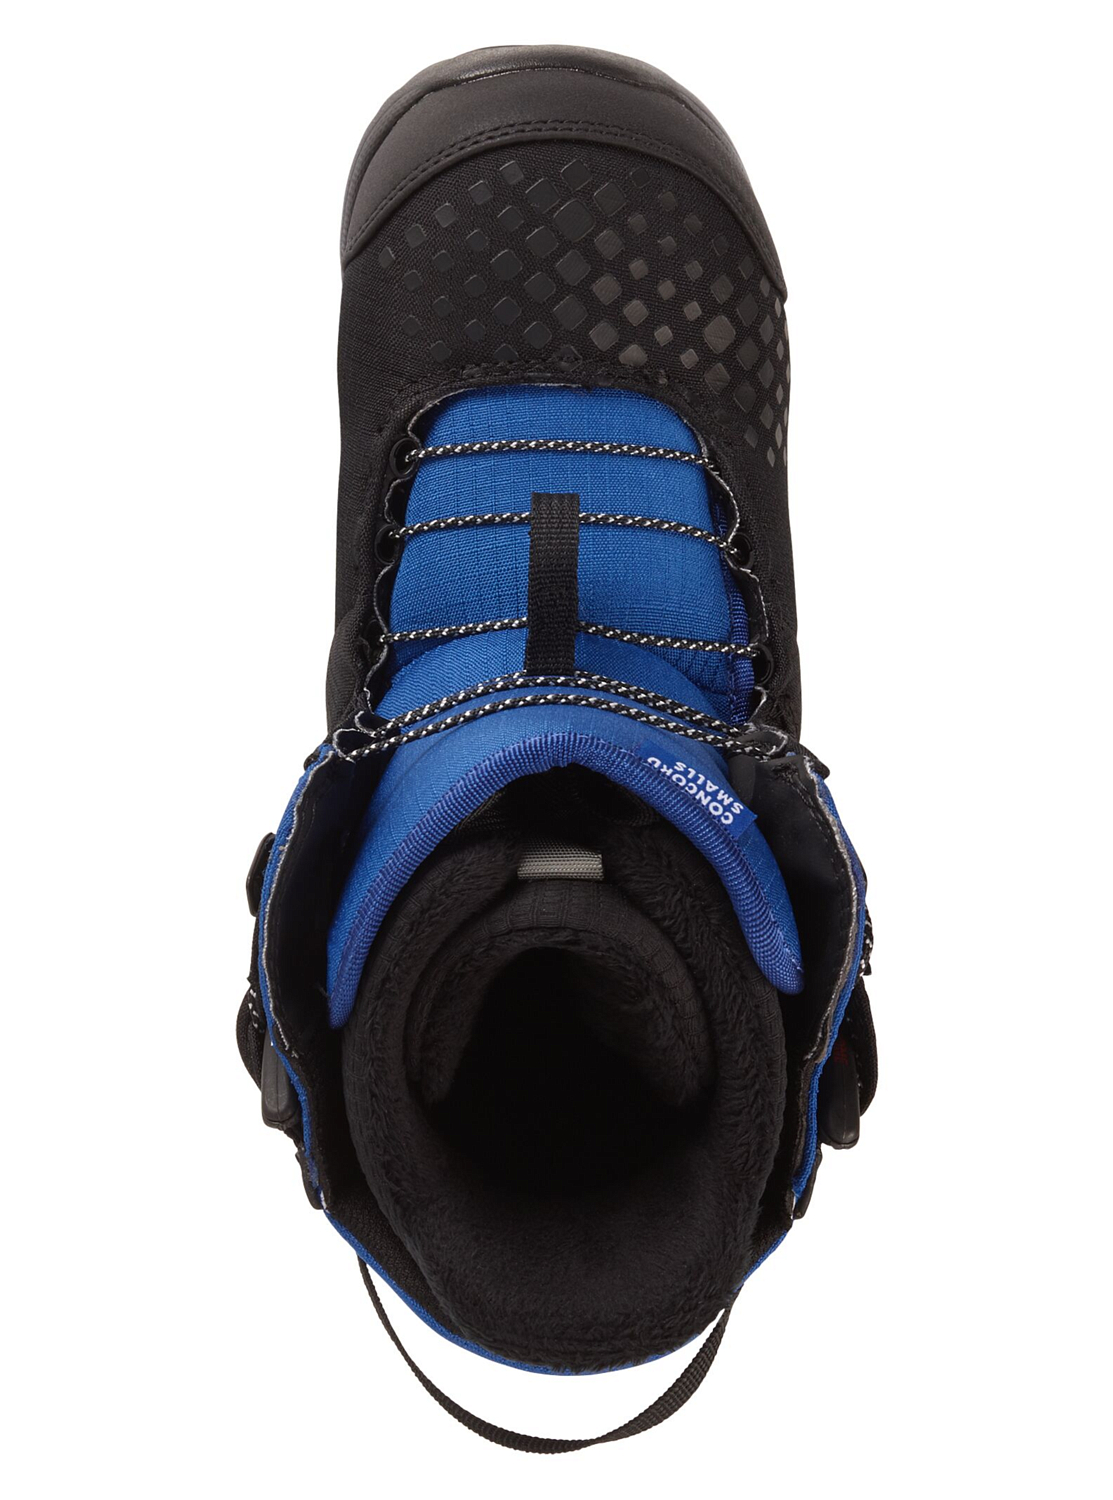 Ботинки для сноуборда детские BURTON 2020-21 Concord smalls Black/Blue